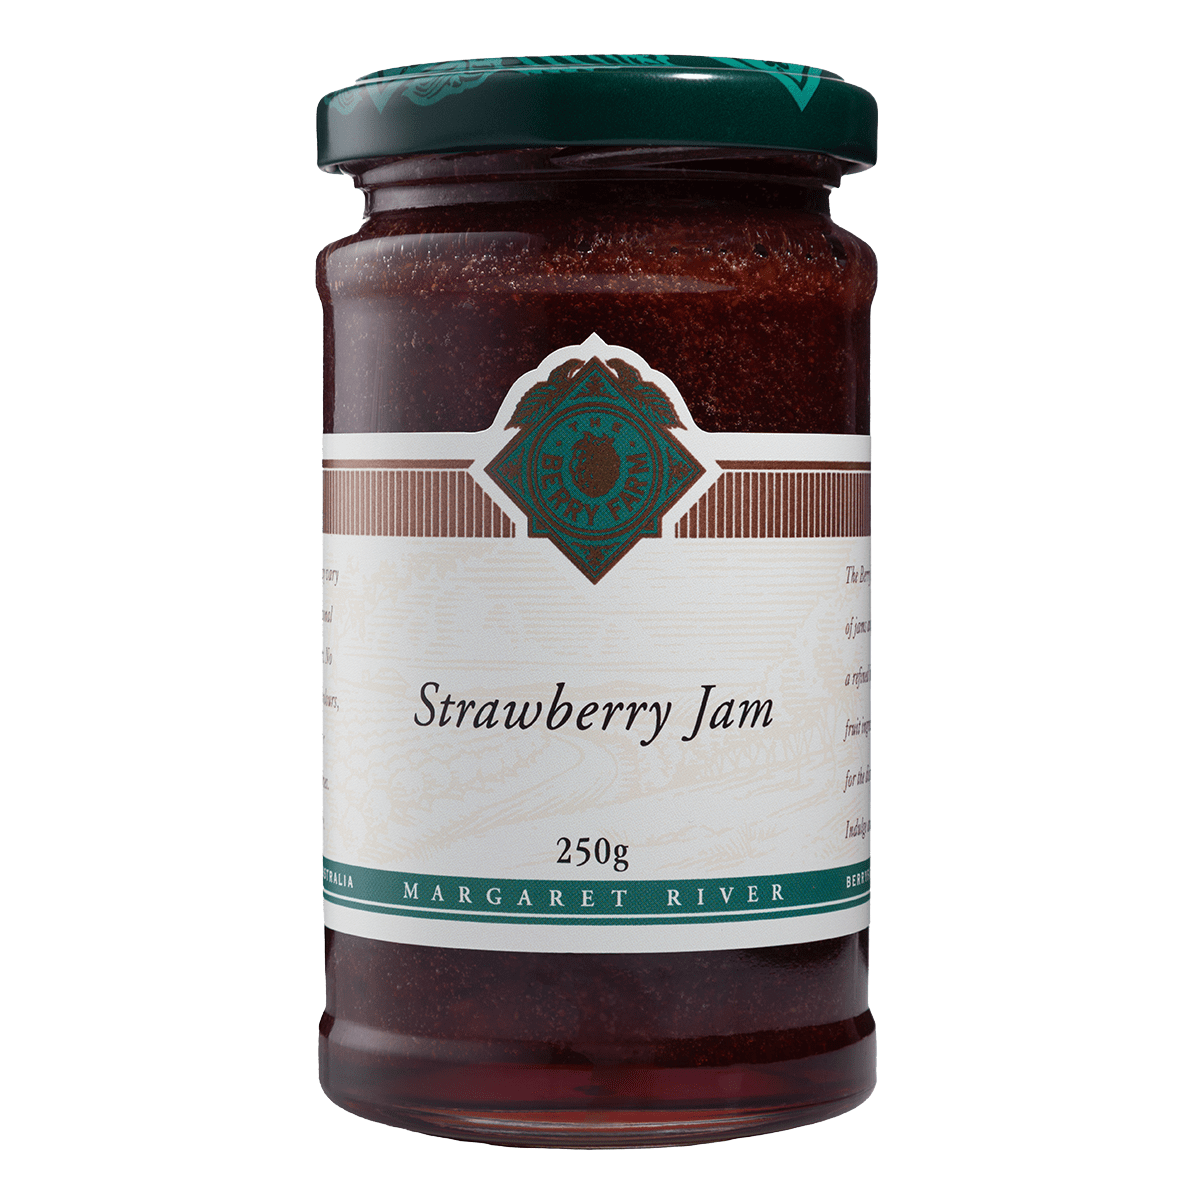 A jar of Strawberry Jam